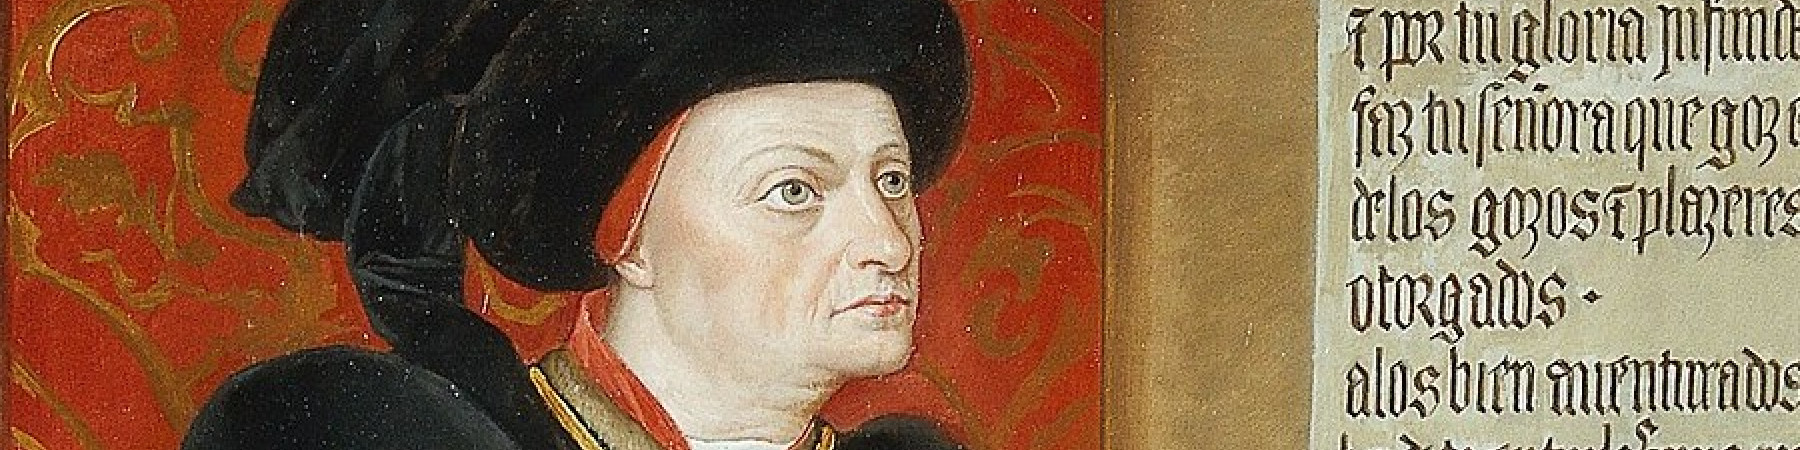 Retrato del marqués de Santillana, copia de Gabriel Maureta (Wikipedia)